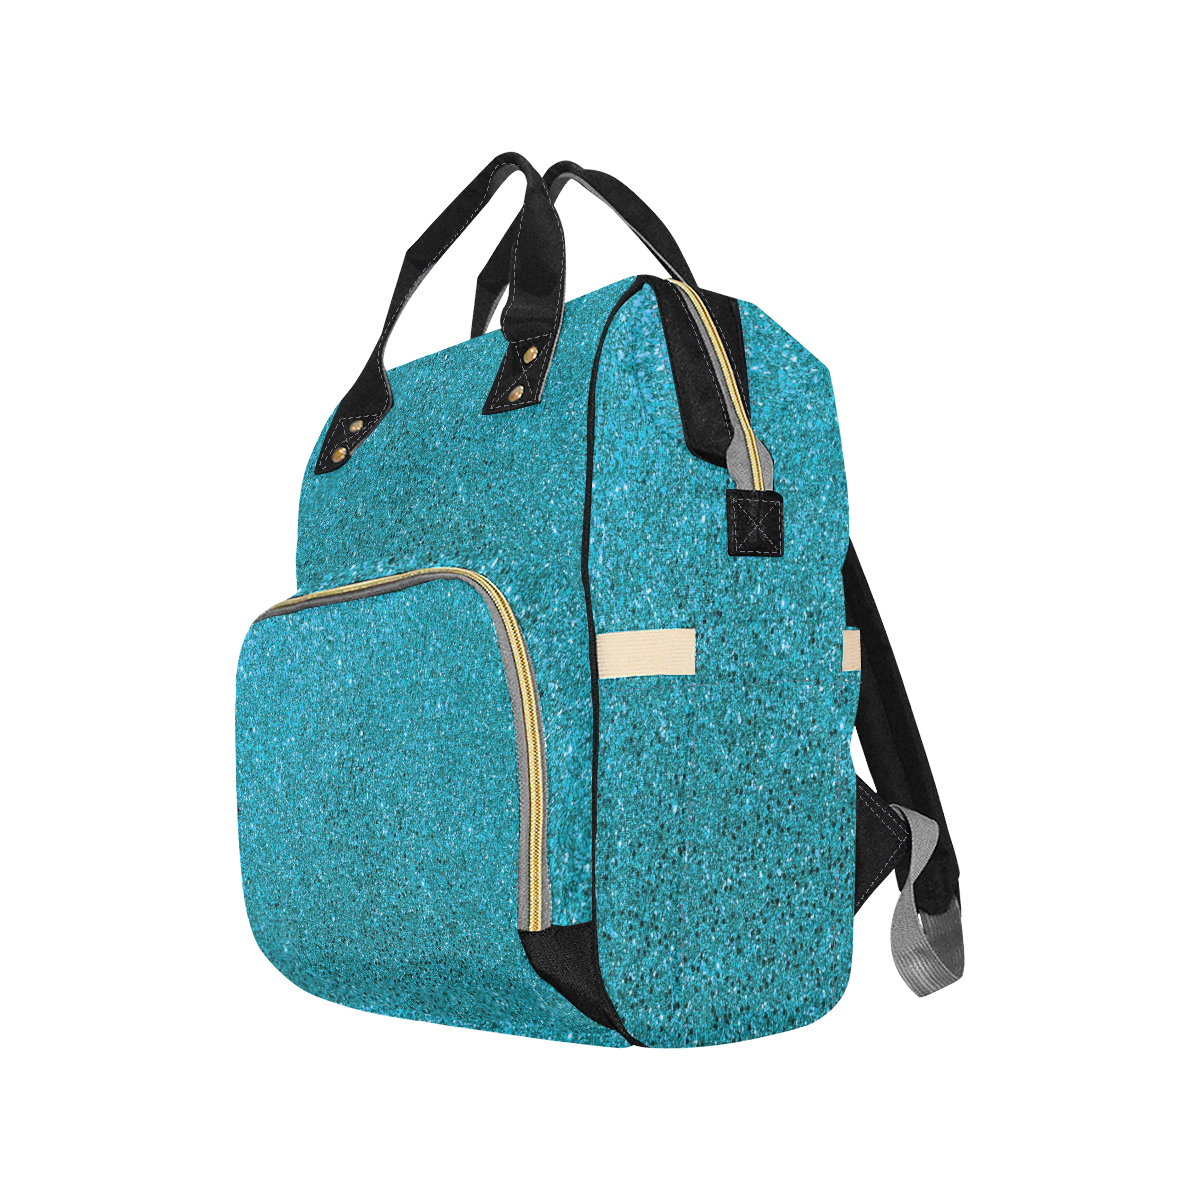 Turquoise Glitter Multi-Function Diaper Backpack/Diaper Bag (Model 1688)